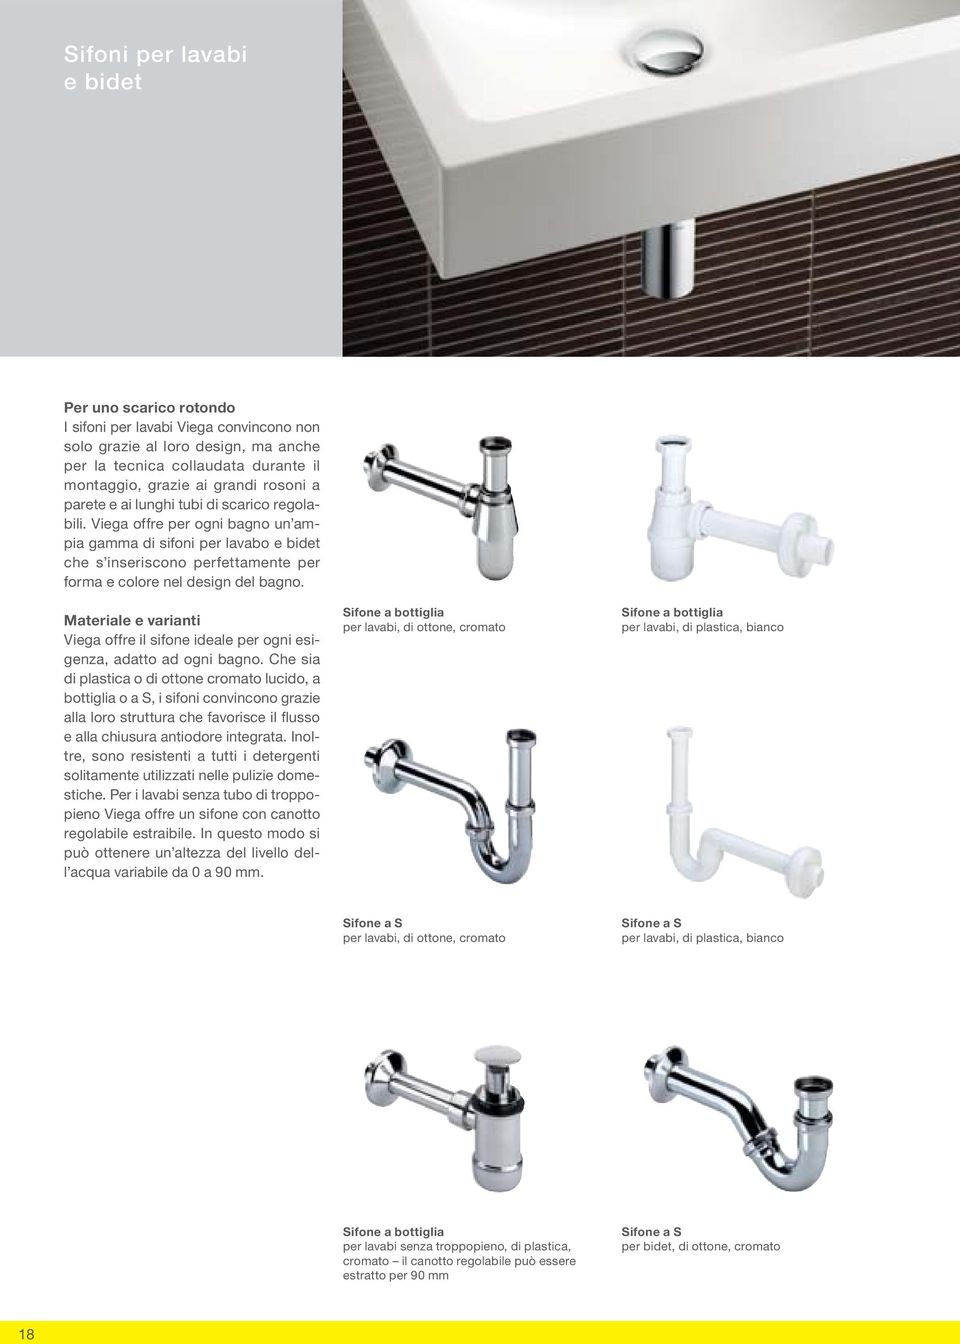 Materiale e varianti Viega offre il sifone ideale per ogni esigenza, adatto ad ogni bagno.